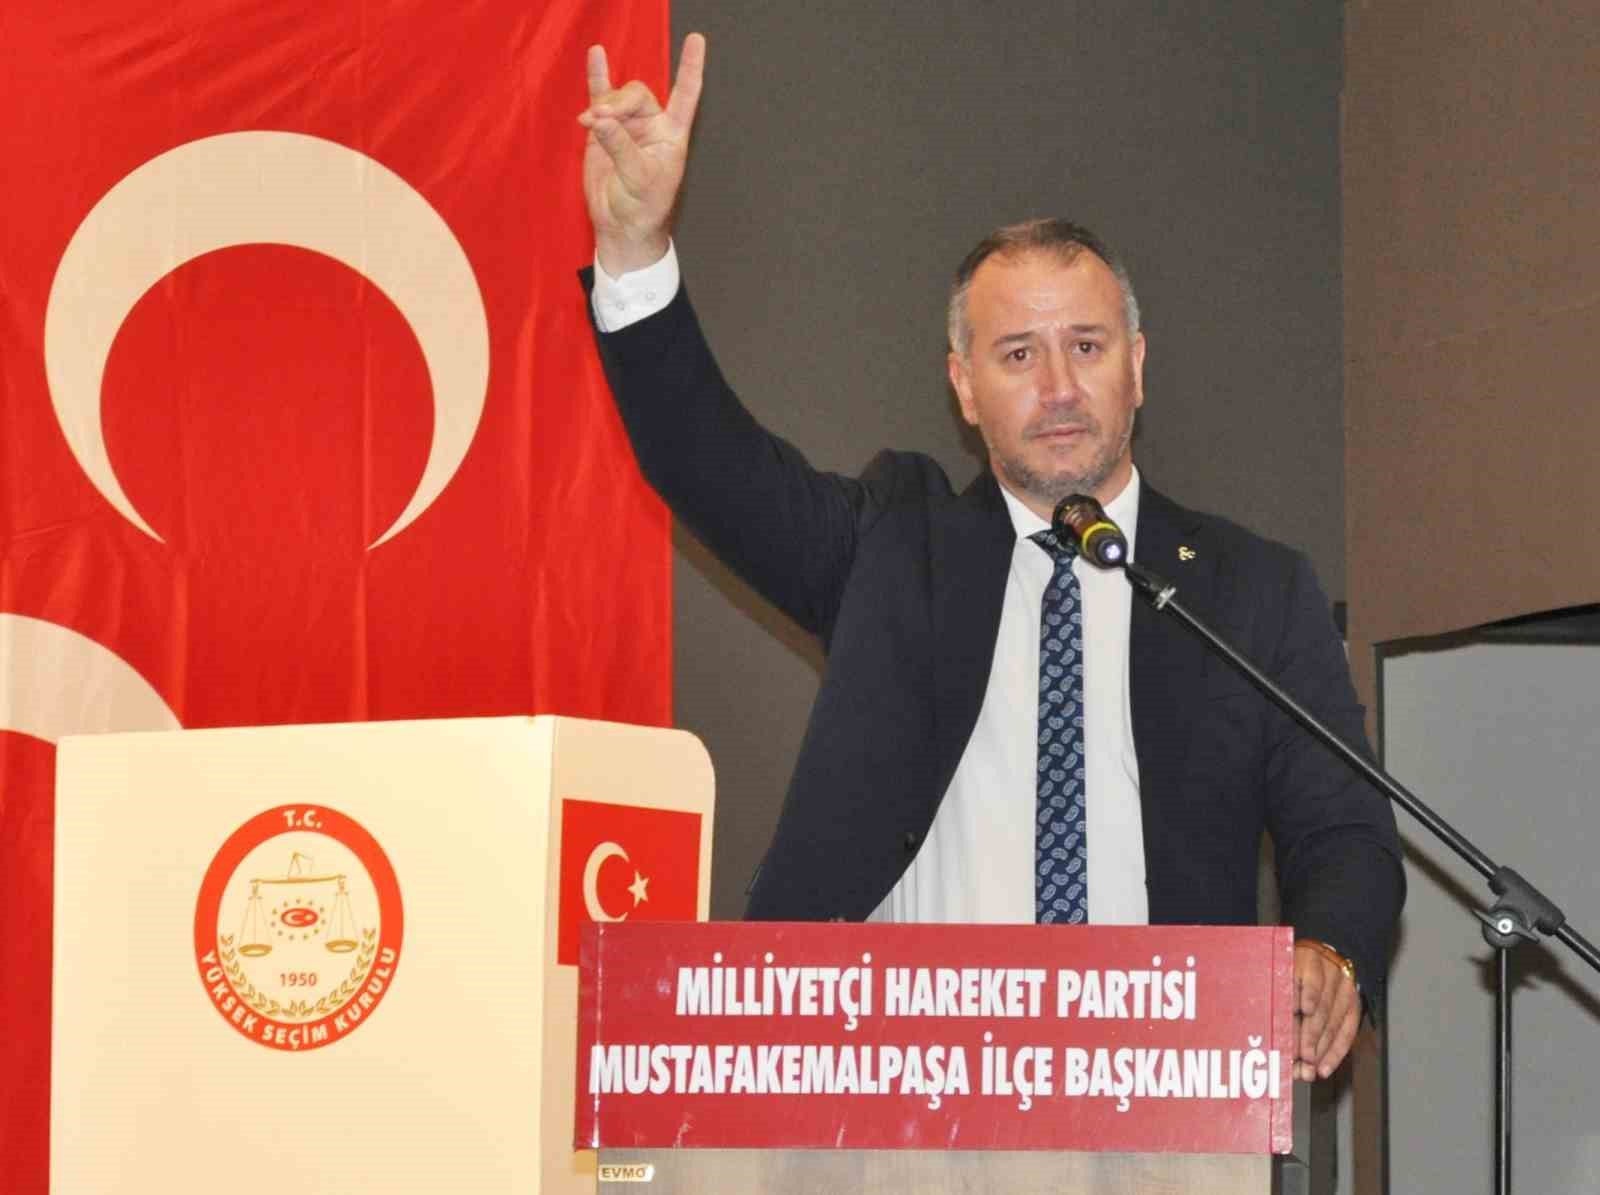 Mhp Mustafakemalpaşada Ahmet Beygirci Dönemi